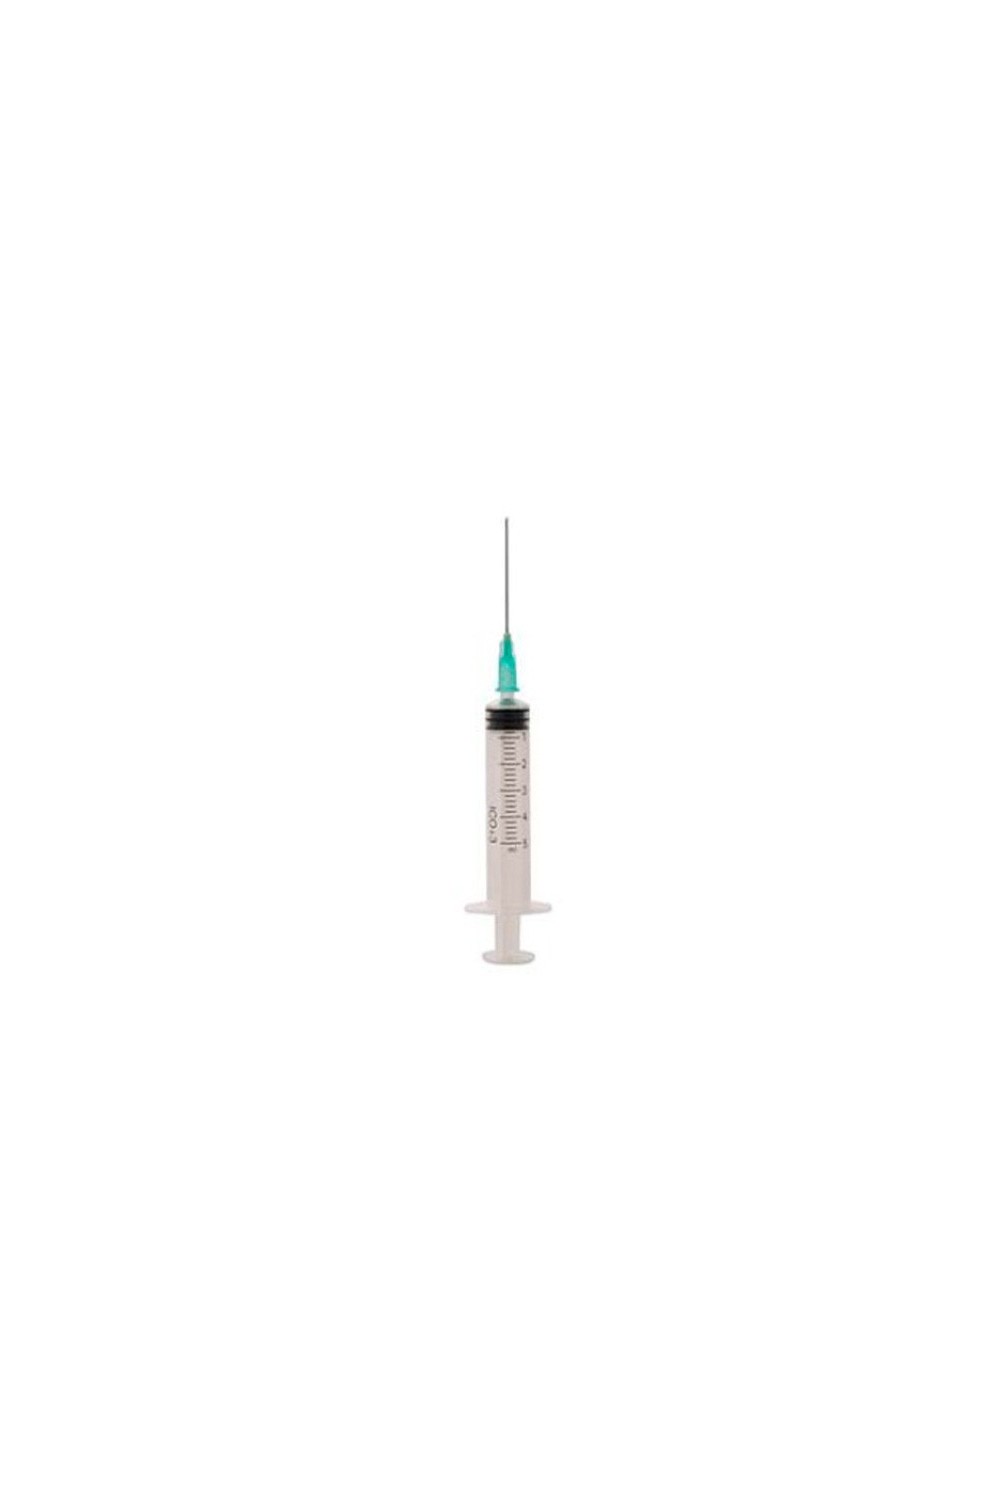 ICO Syringe 5ml 0.8/40